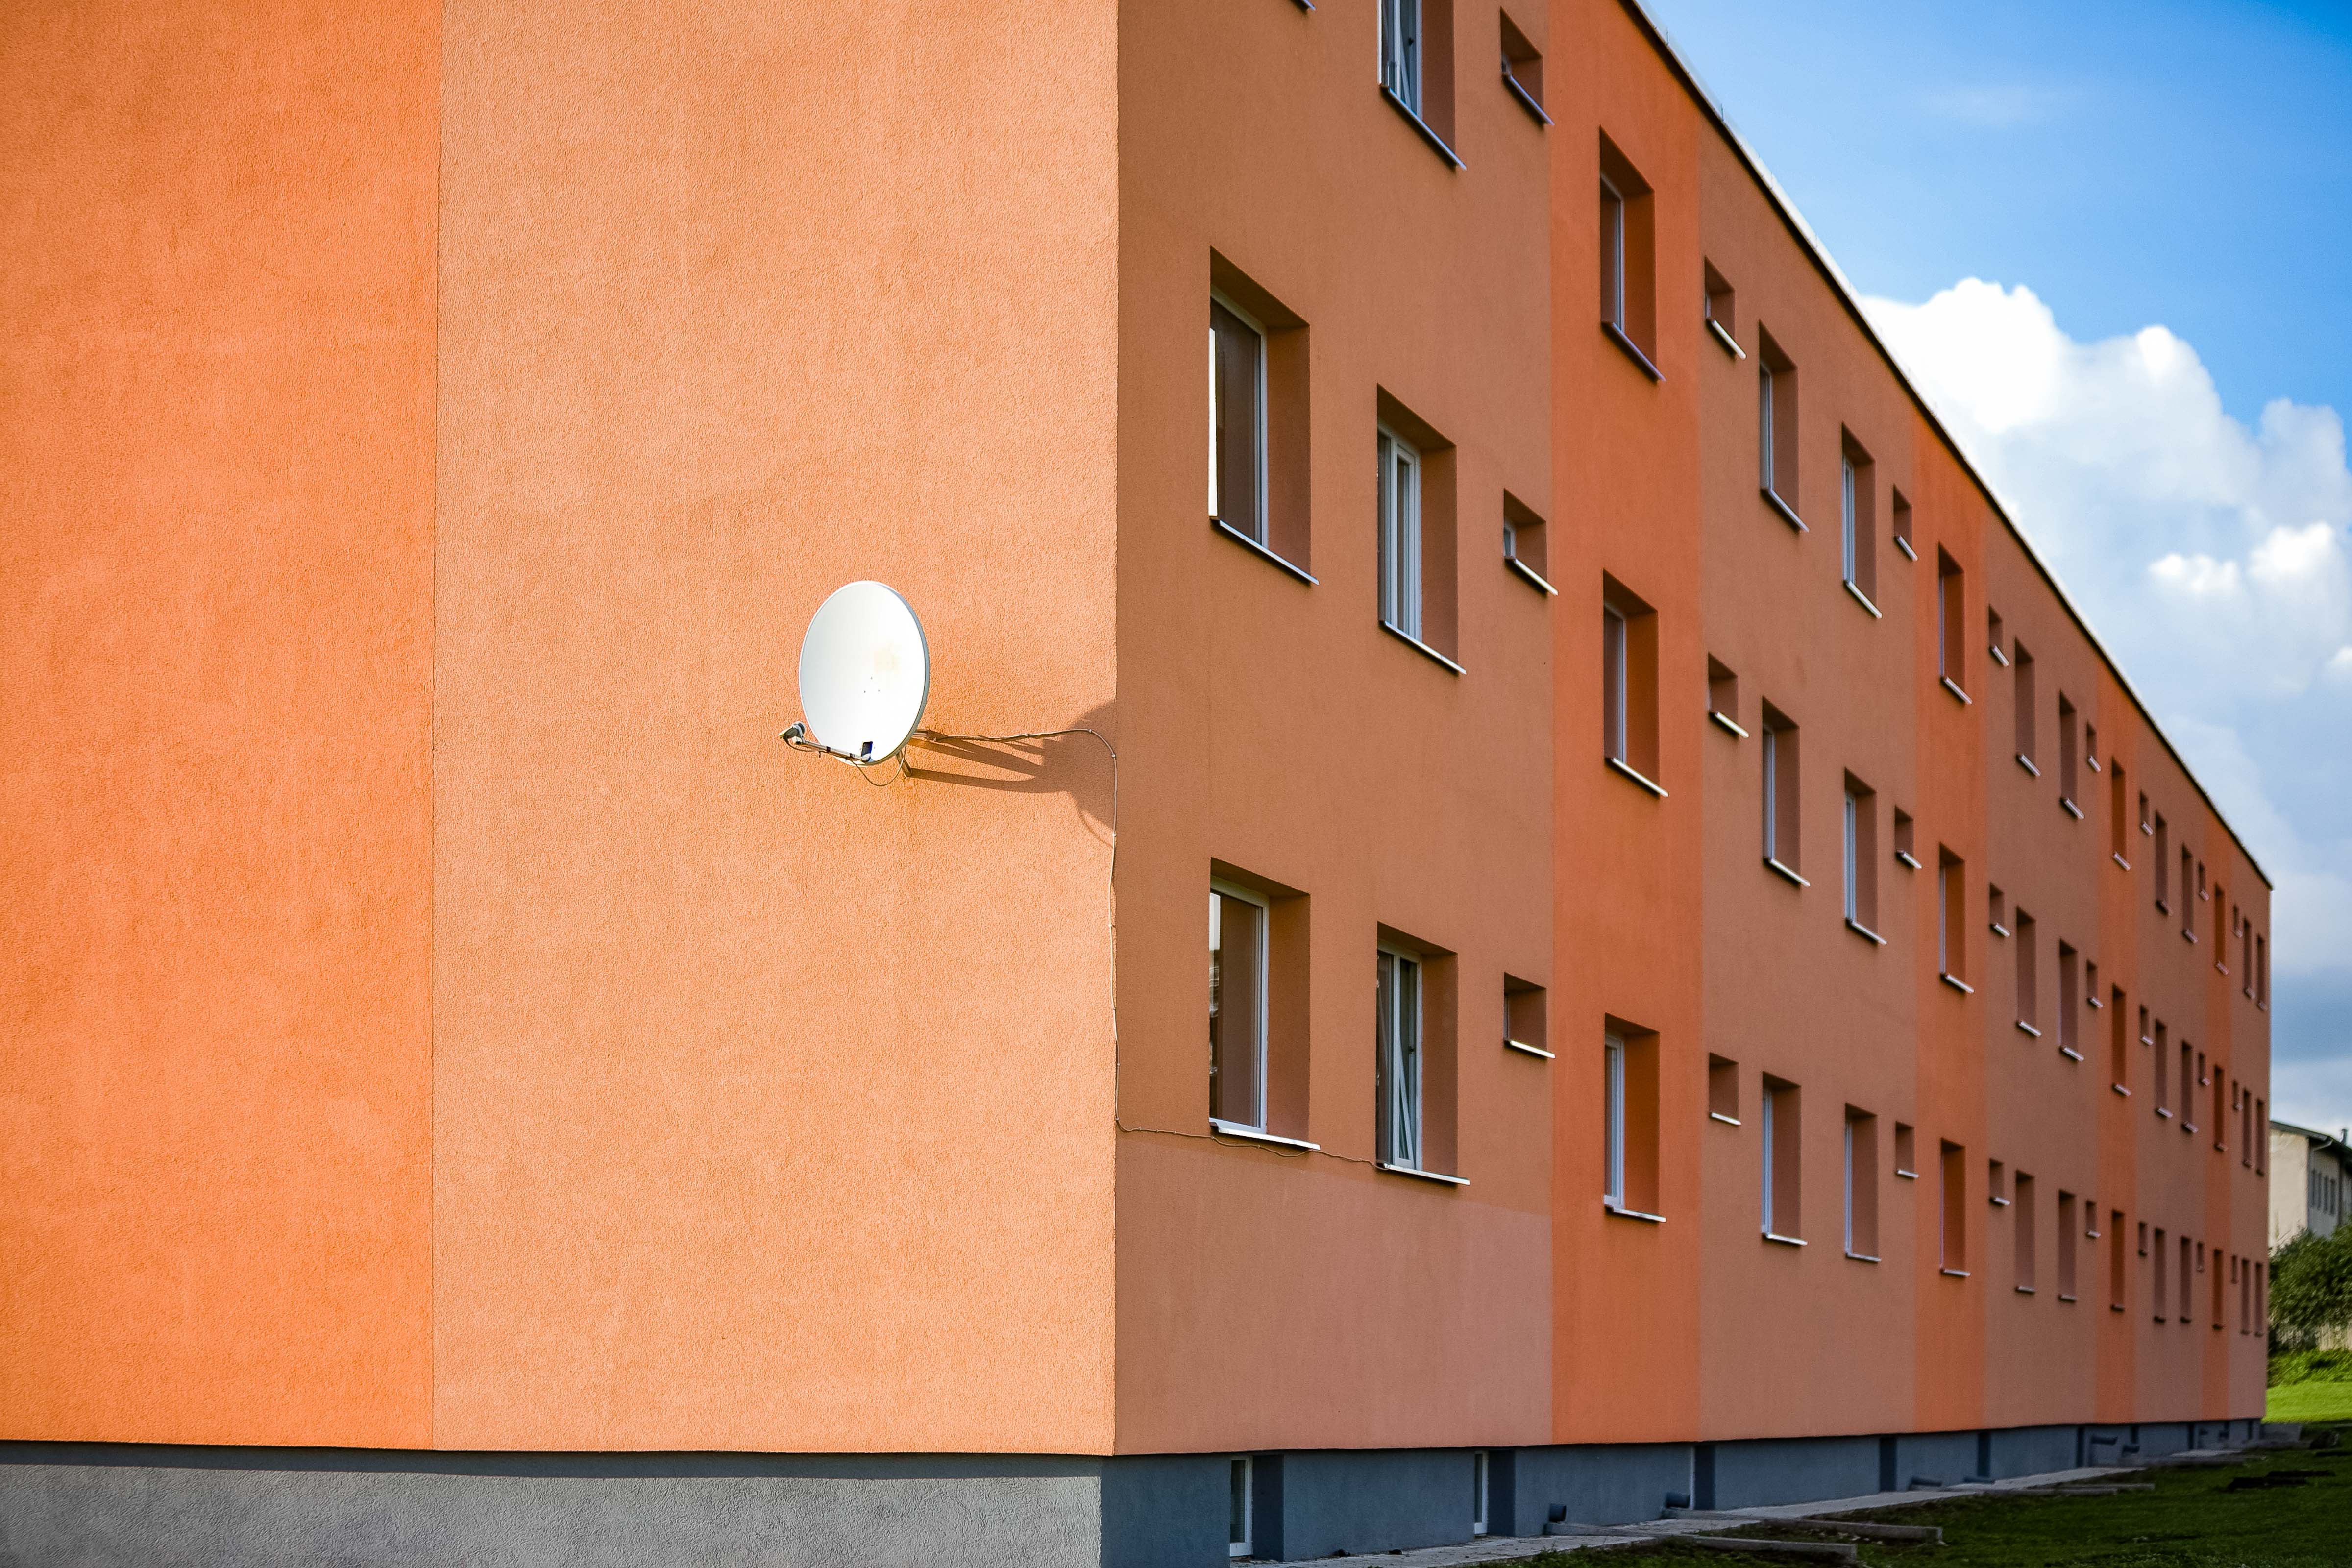 Estonia, Raplamaa Prov, Apartment Building, 2010, IMG_1255